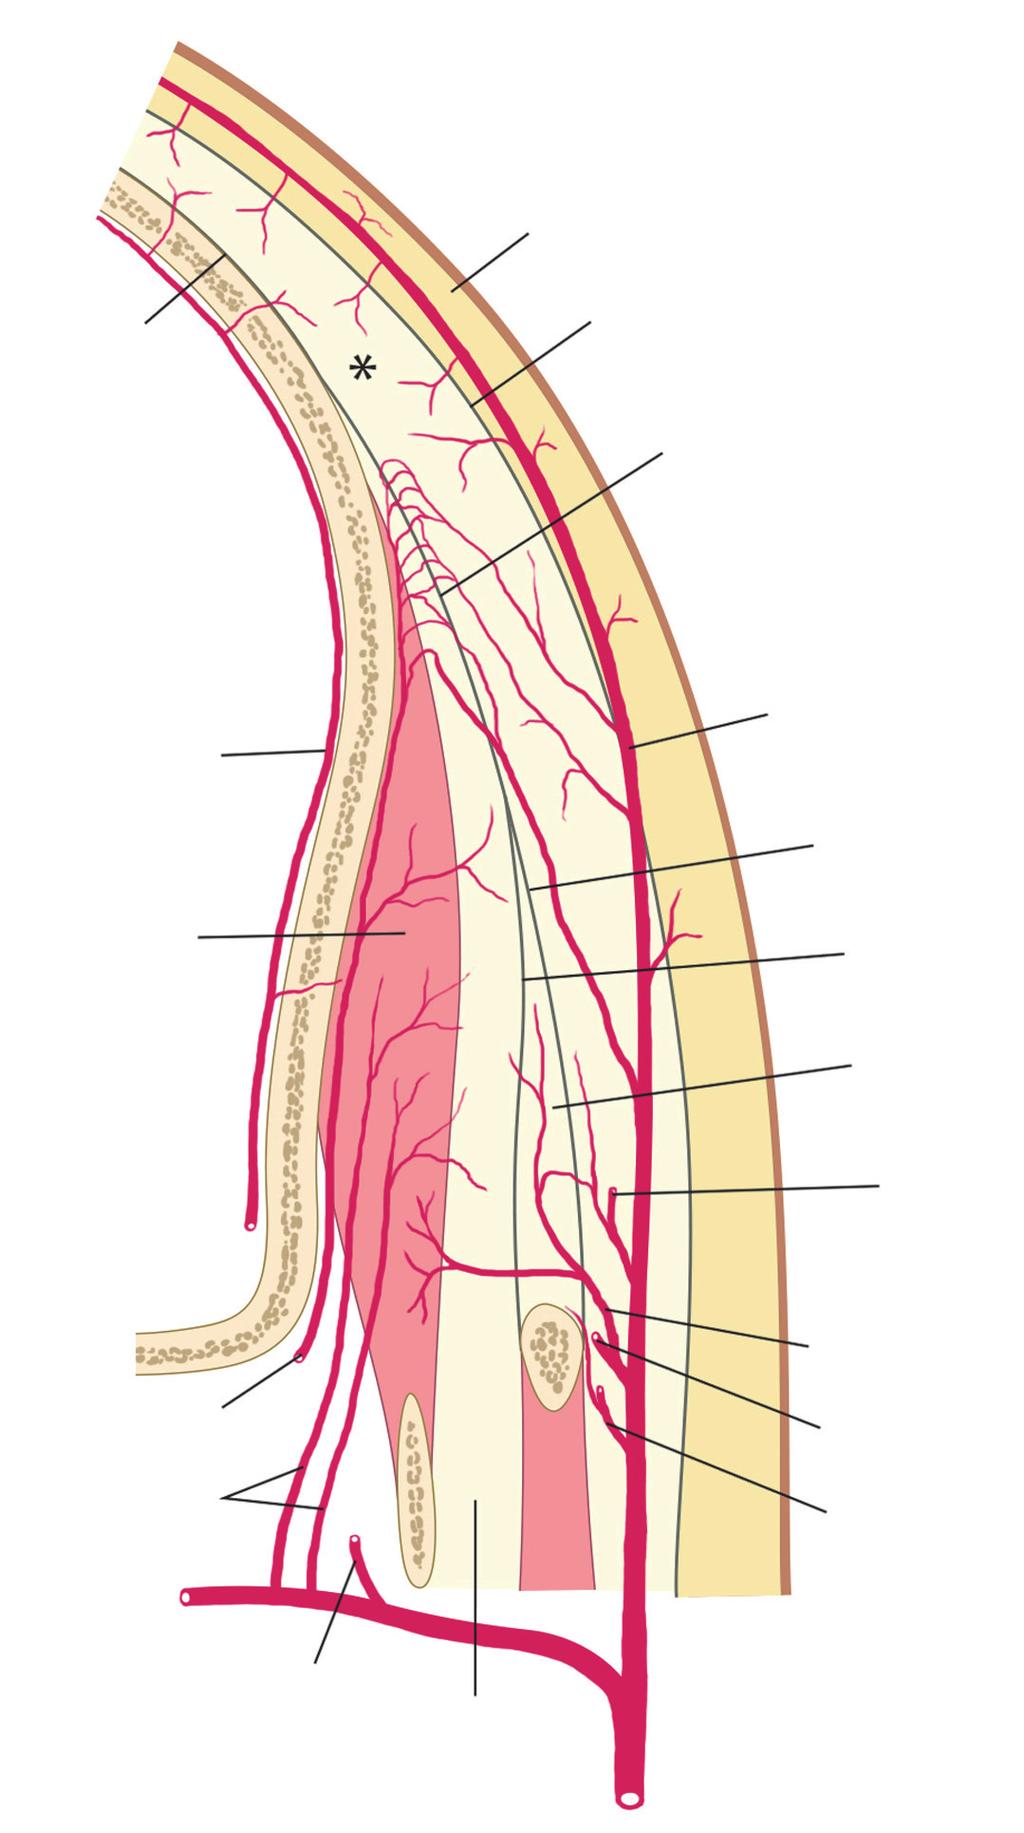 Lee WK, Choi YC, Hong JH, Kim ST 꼴의가장자리는머리뼈의가쪽면에붙고, 부채의손잡 이부분은아래턱뼈의갈고리돌기 (coronoid process) 에 붙는다.